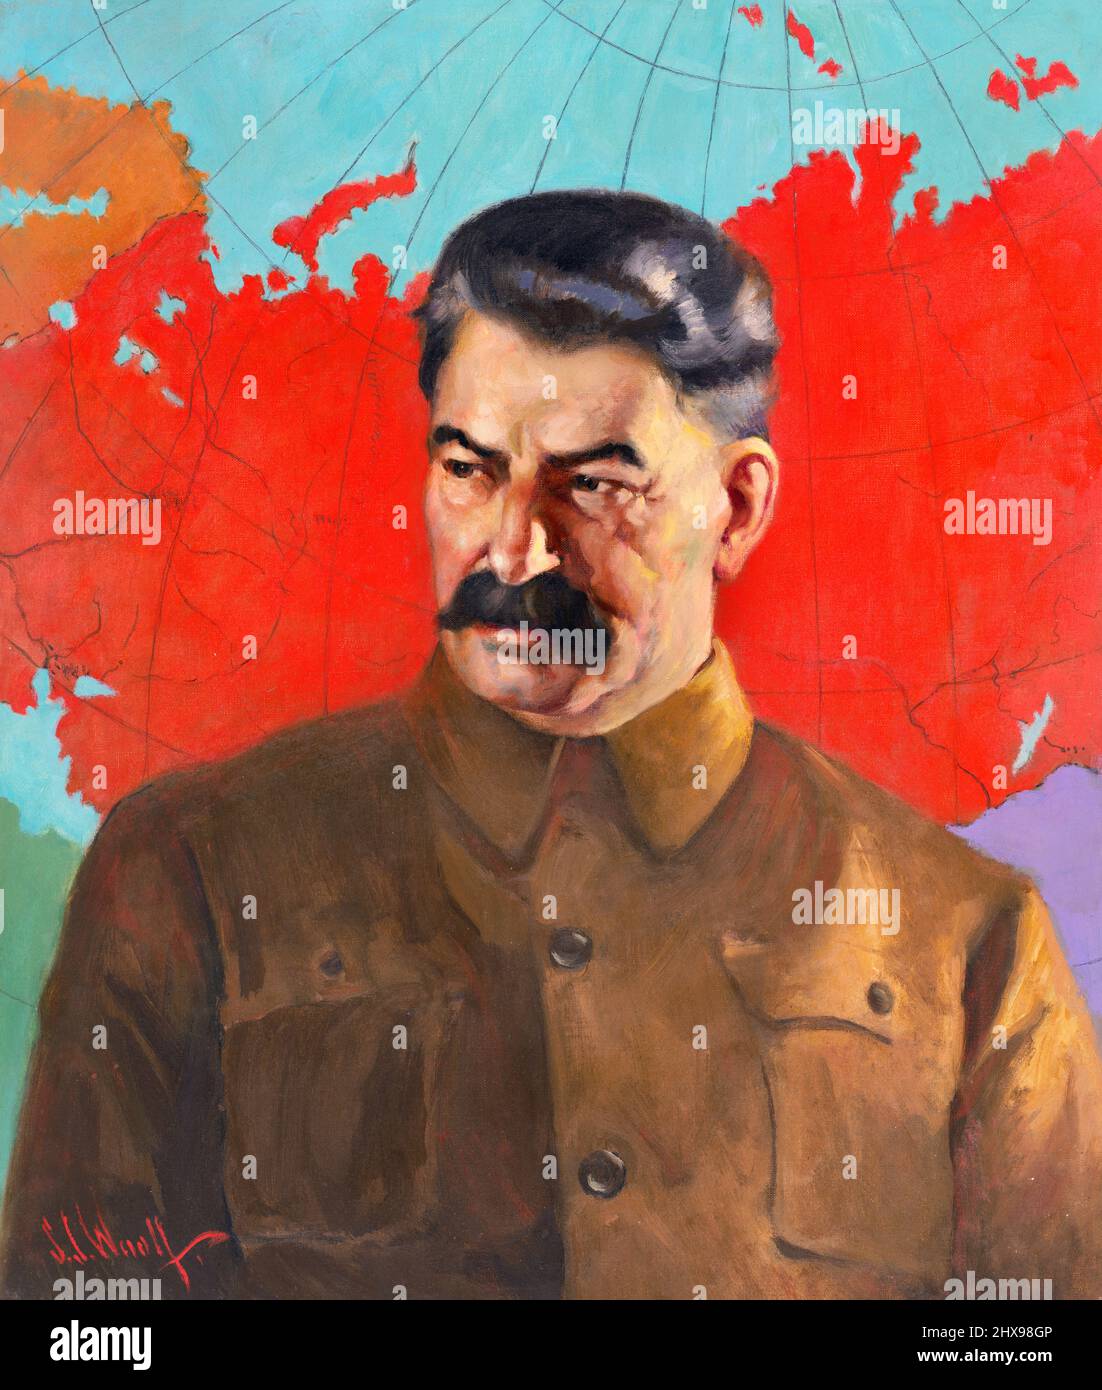 Joseph Stalin, Ministerpräsident und Generalsekretär des Zentralkomitees der Kommunistischen Partei der Sowjetunion. Porträt von Samuel Johnson Woolf, Öl auf Leinwand, 1937 Stockfoto